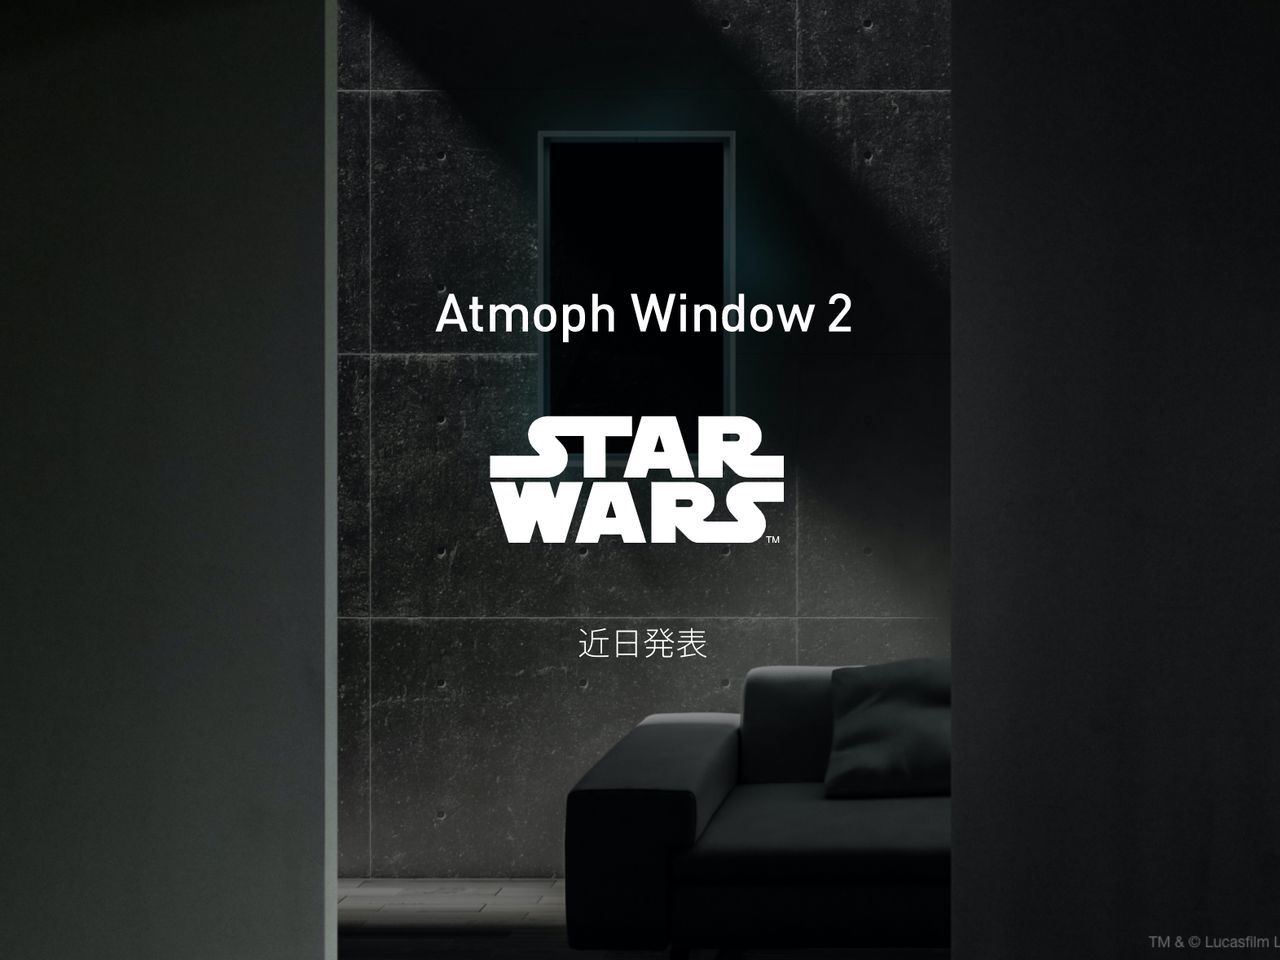 スマート窓「Atmoph Window 2」がスター・ウォーズとコラボ発表--窓の 